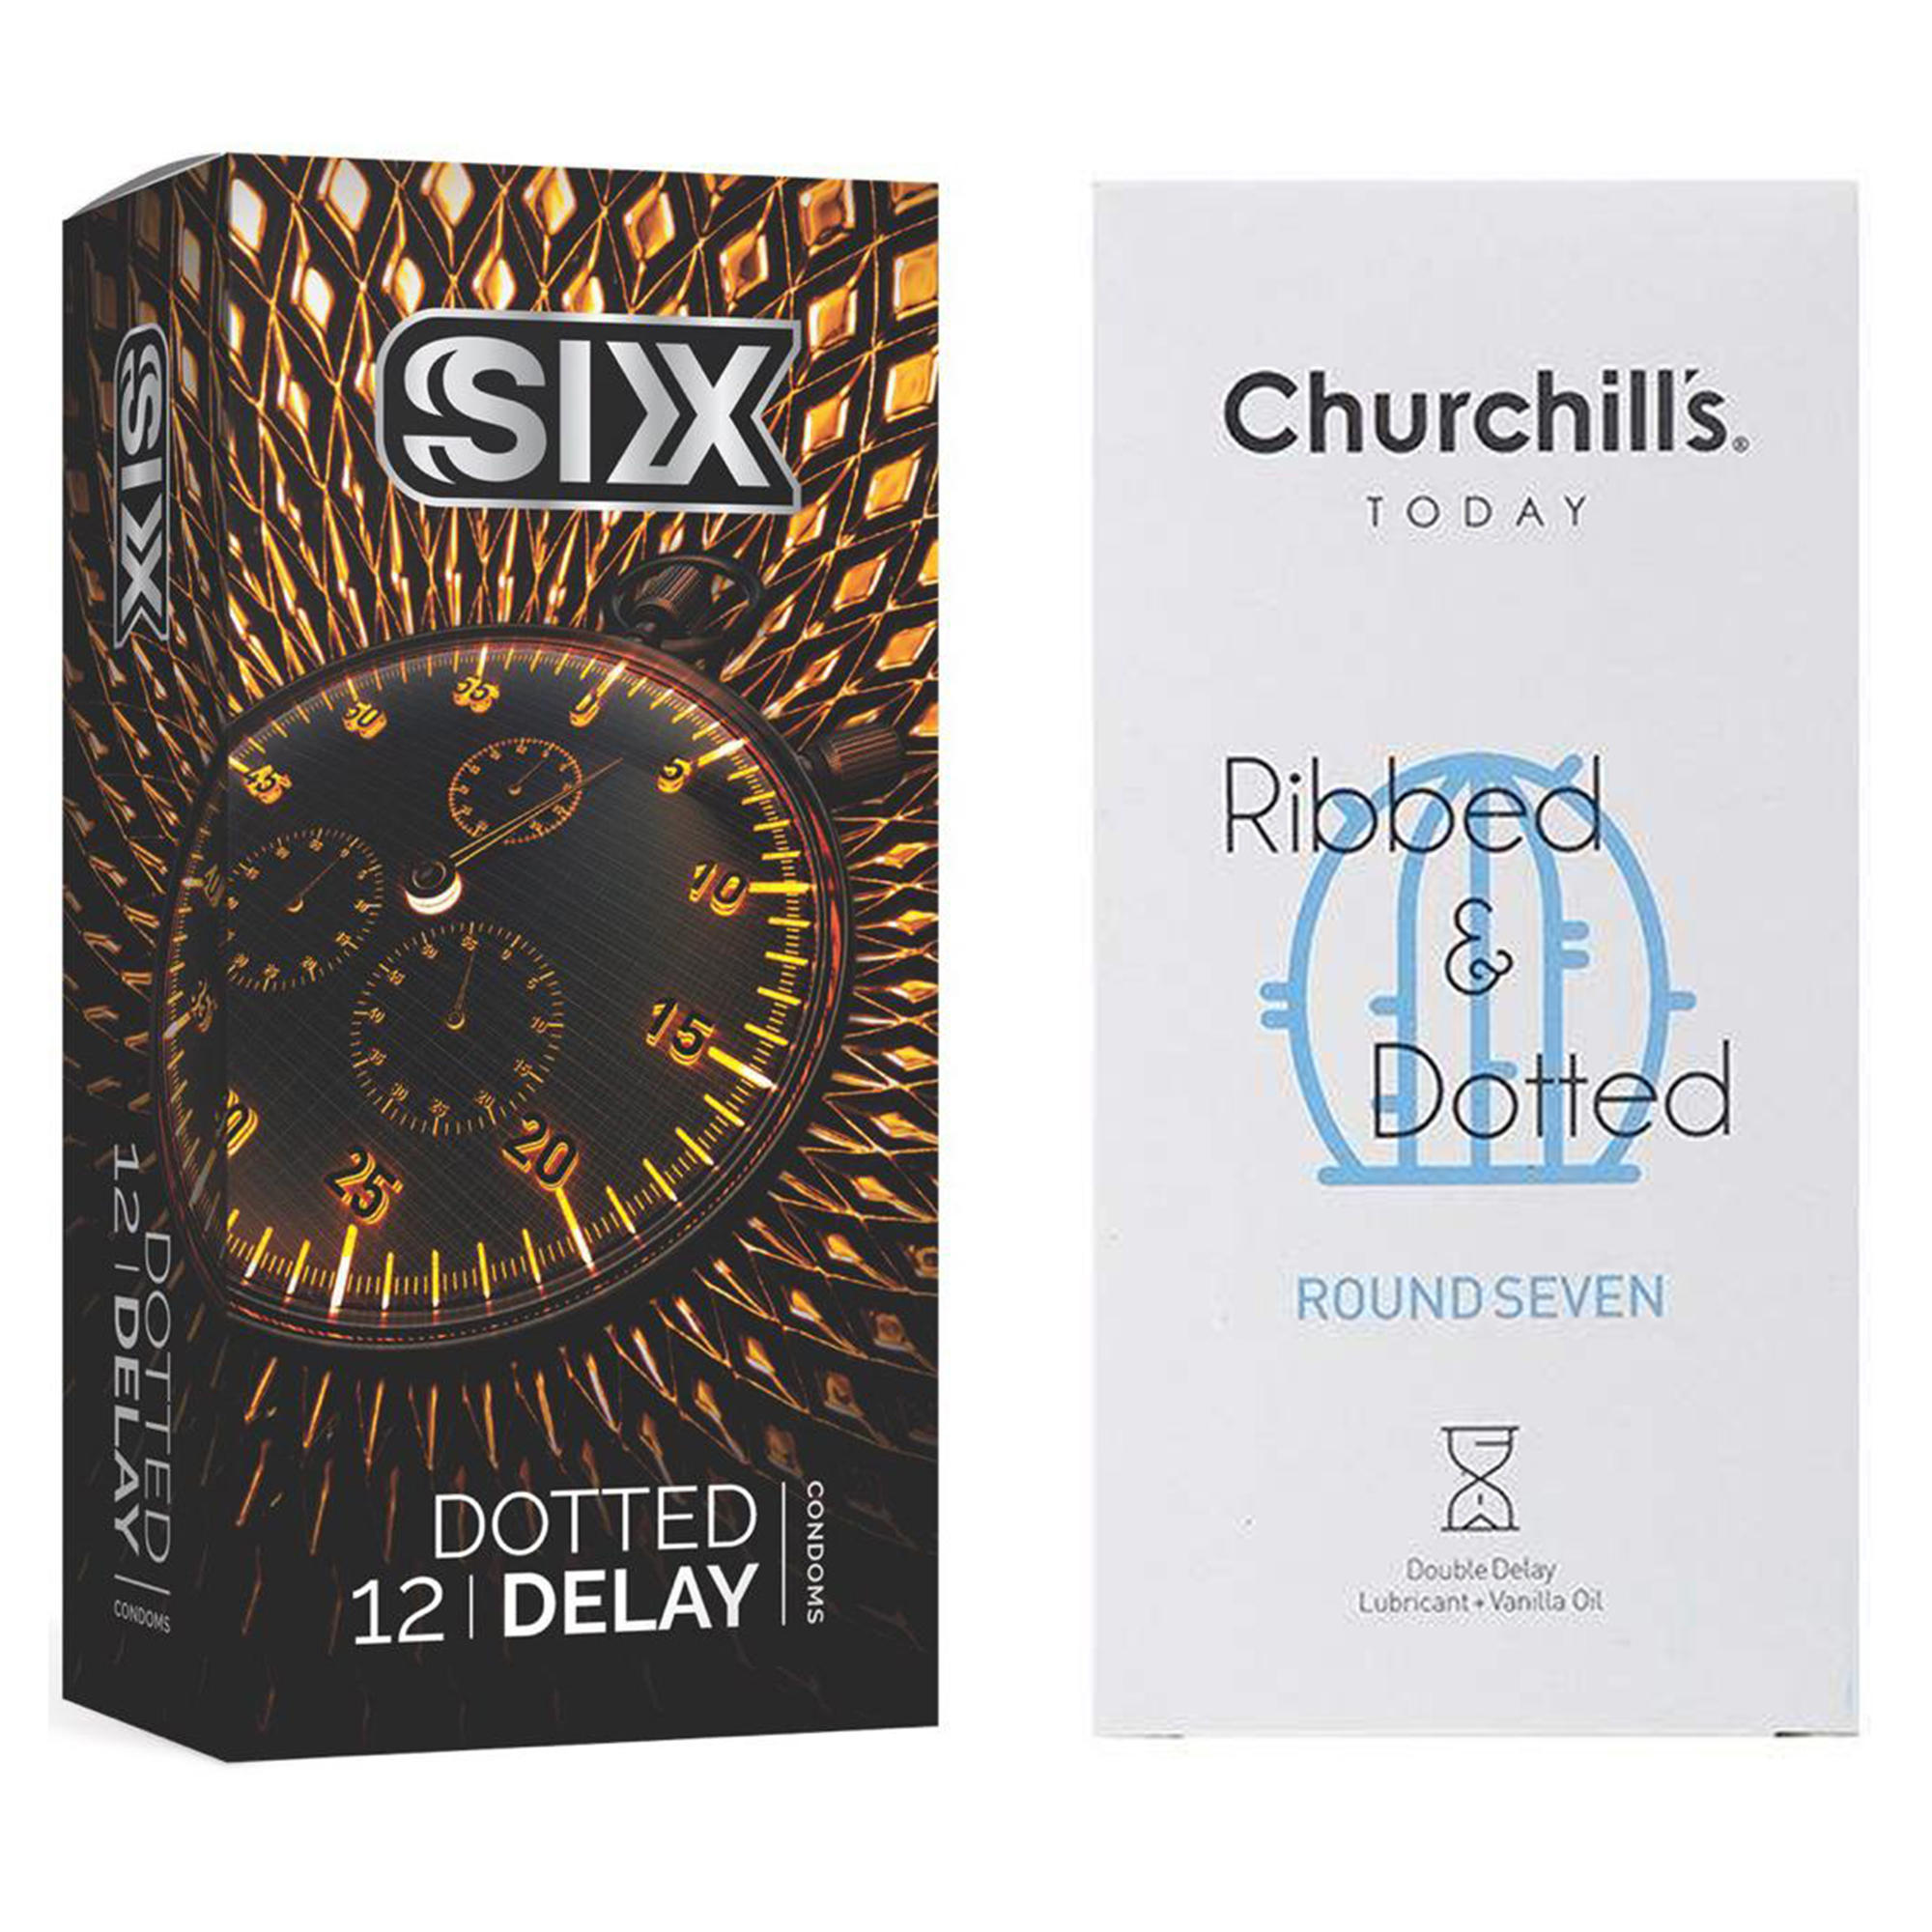 نکته خرید - قیمت روز کاندوم چرچیلز مدل Round Seven بسته 12 عددی به همراه کاندوم سیکس مدل تاخیری بسته 12 عددی خرید